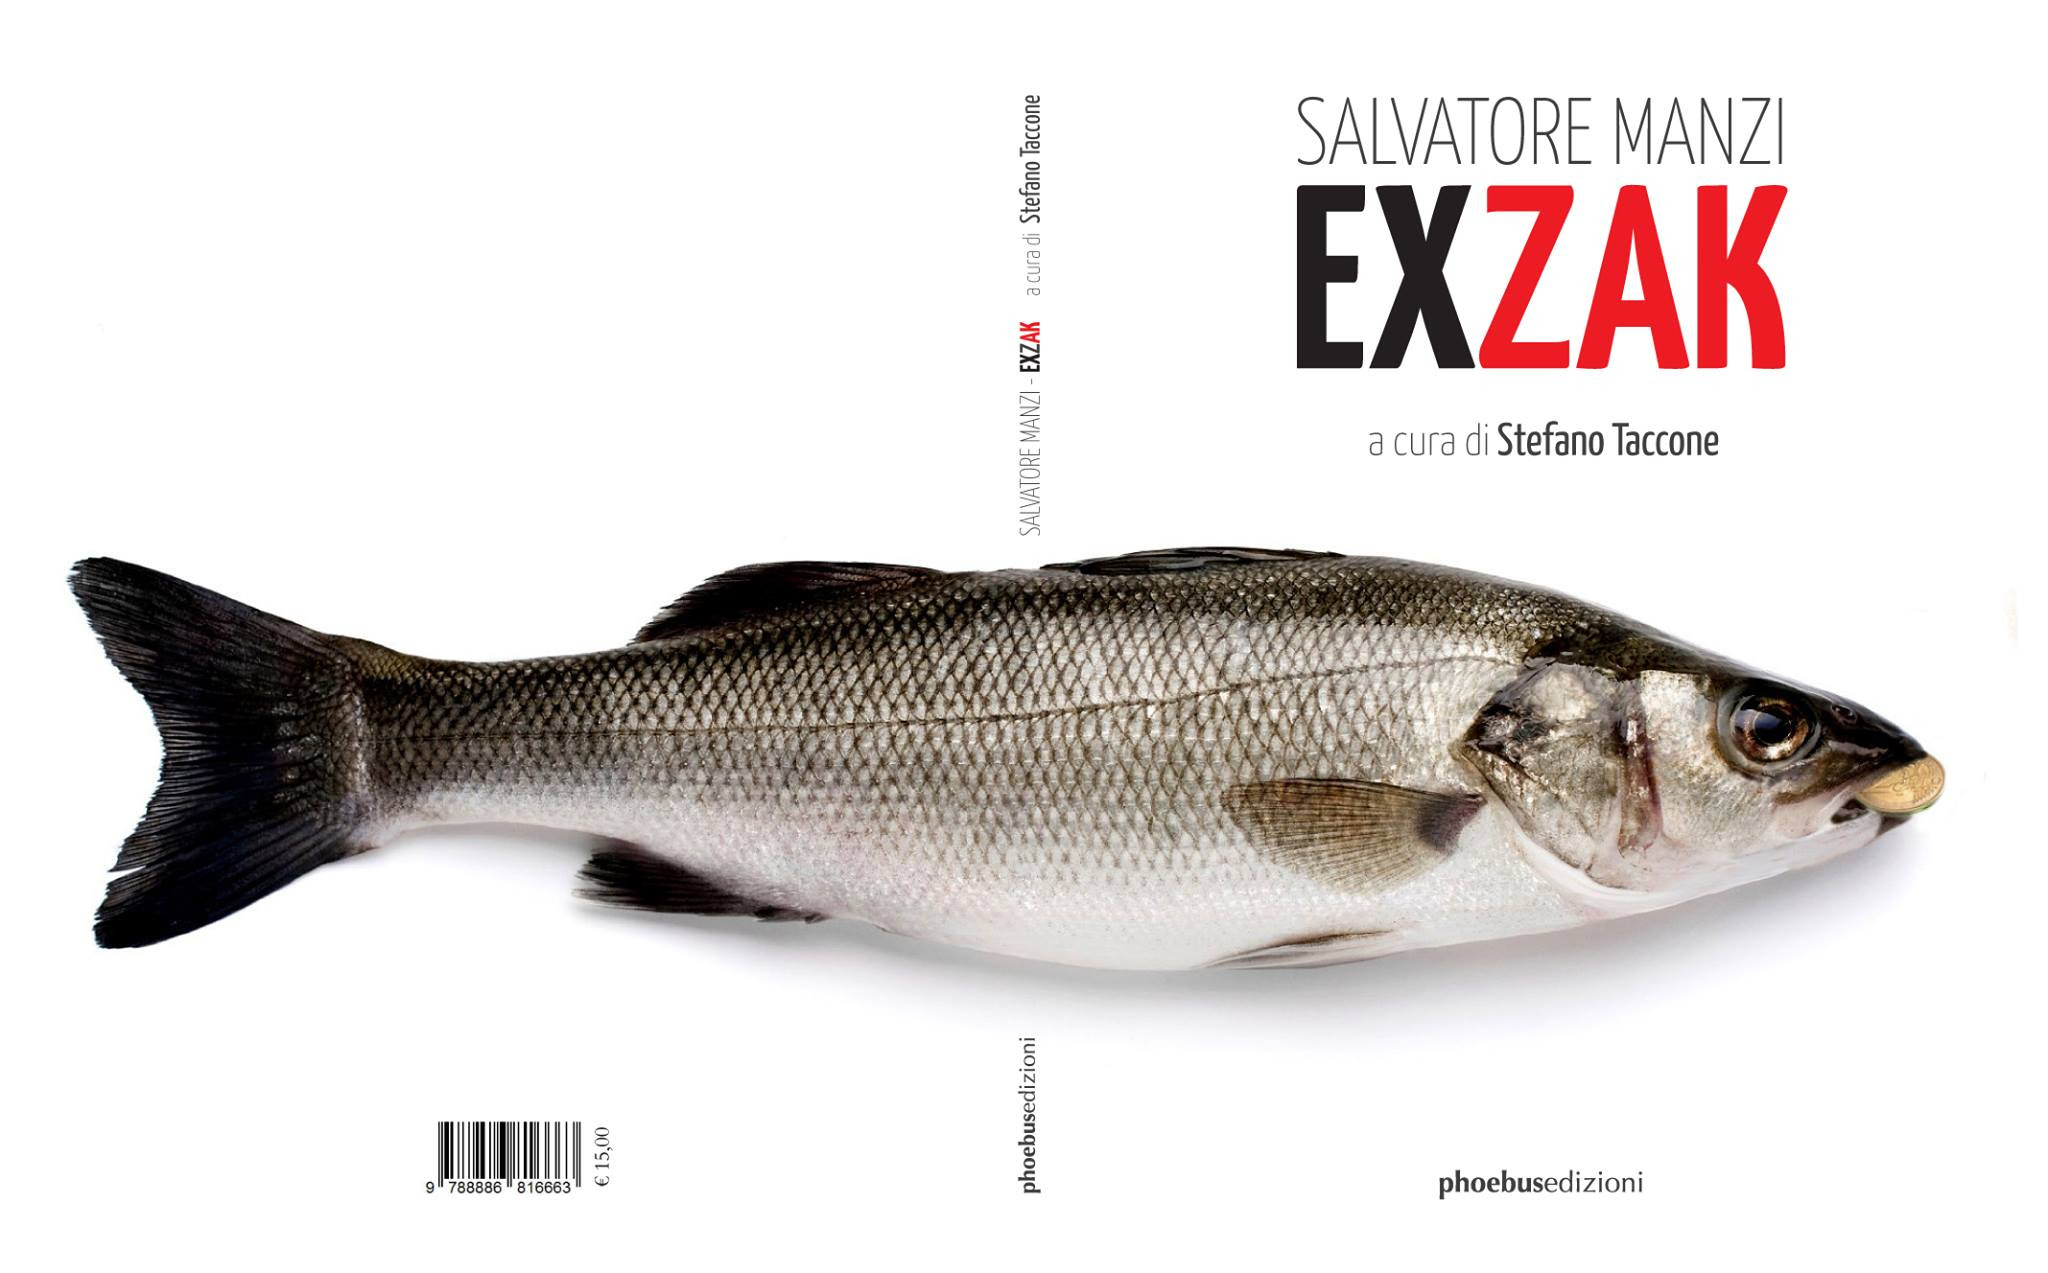 Salvatore Manzi – Ex zak